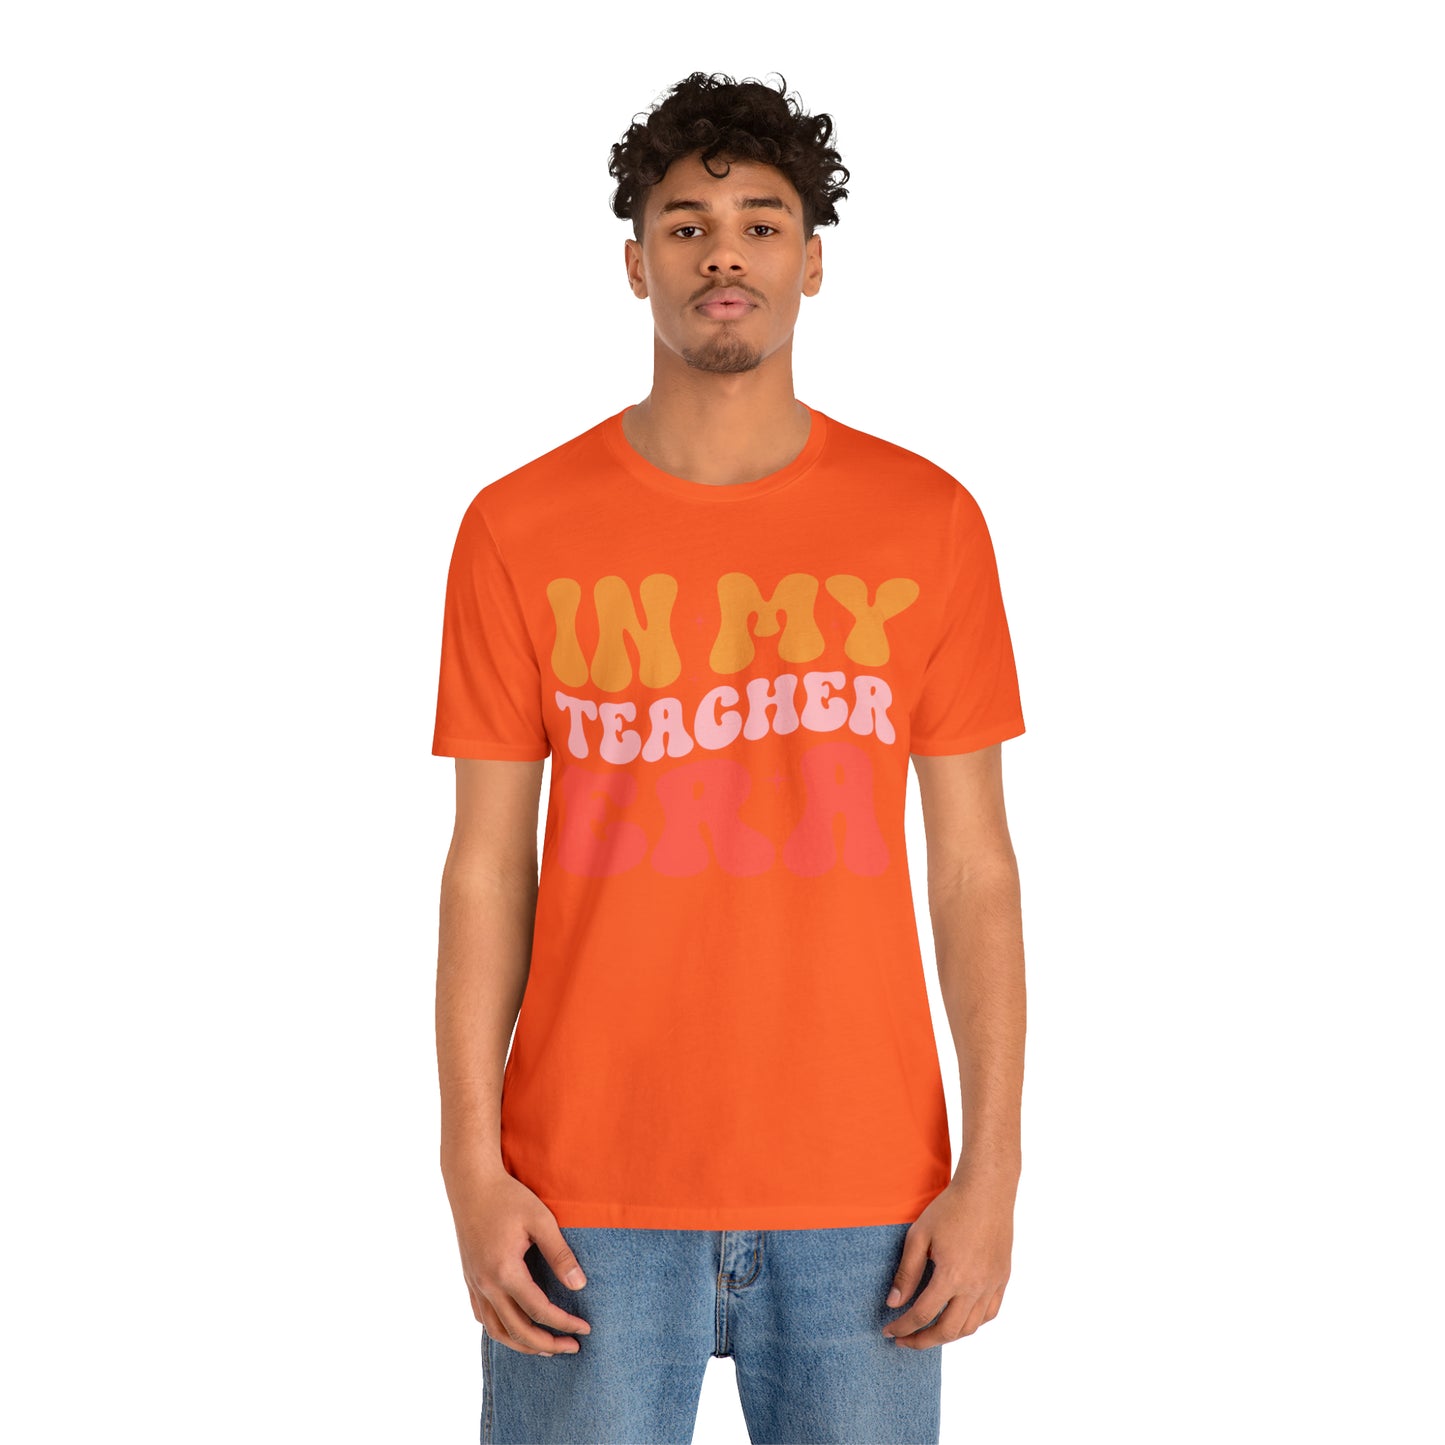 Teacher Shirt, Teacher Appreciation Gift, In My Cool Teacher Era, Retro Teacher Era Shirt, Back To School Shirt, T606